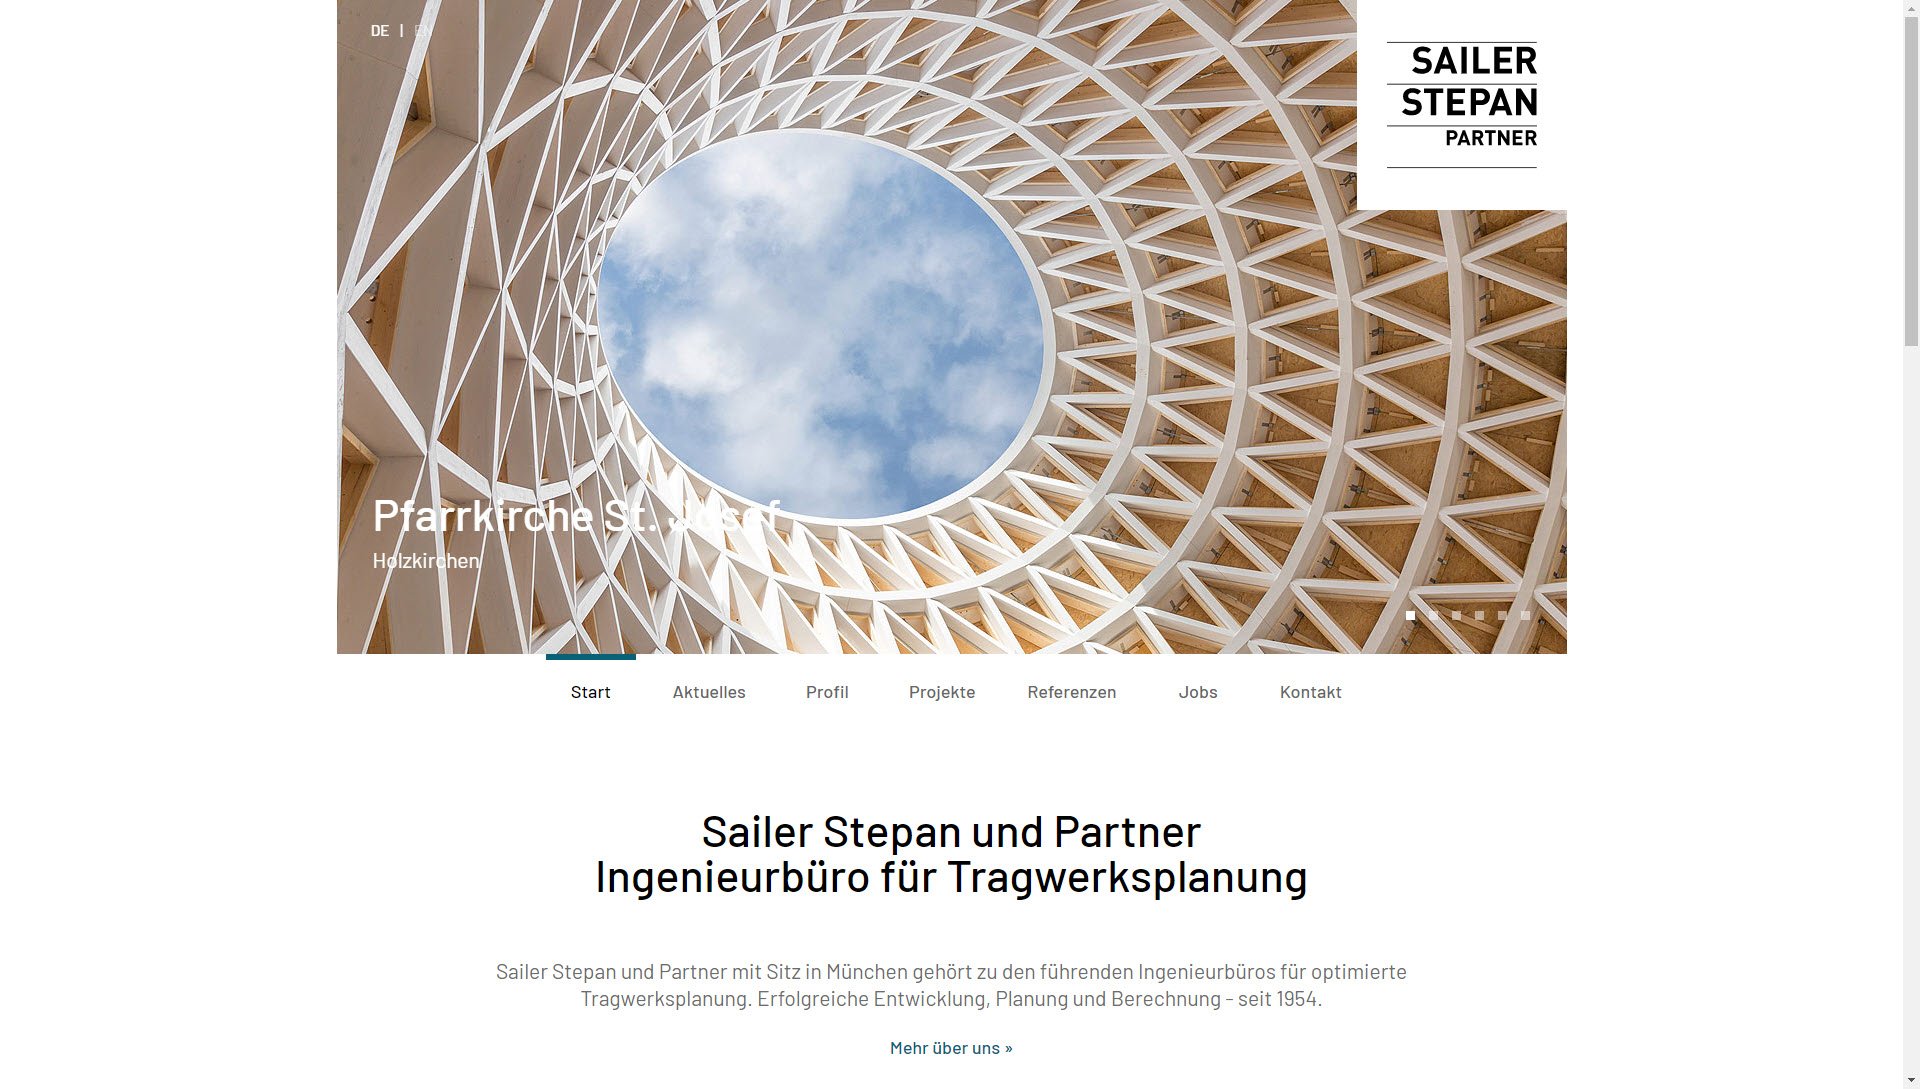 Sailer, Stepan und Partner GmbH